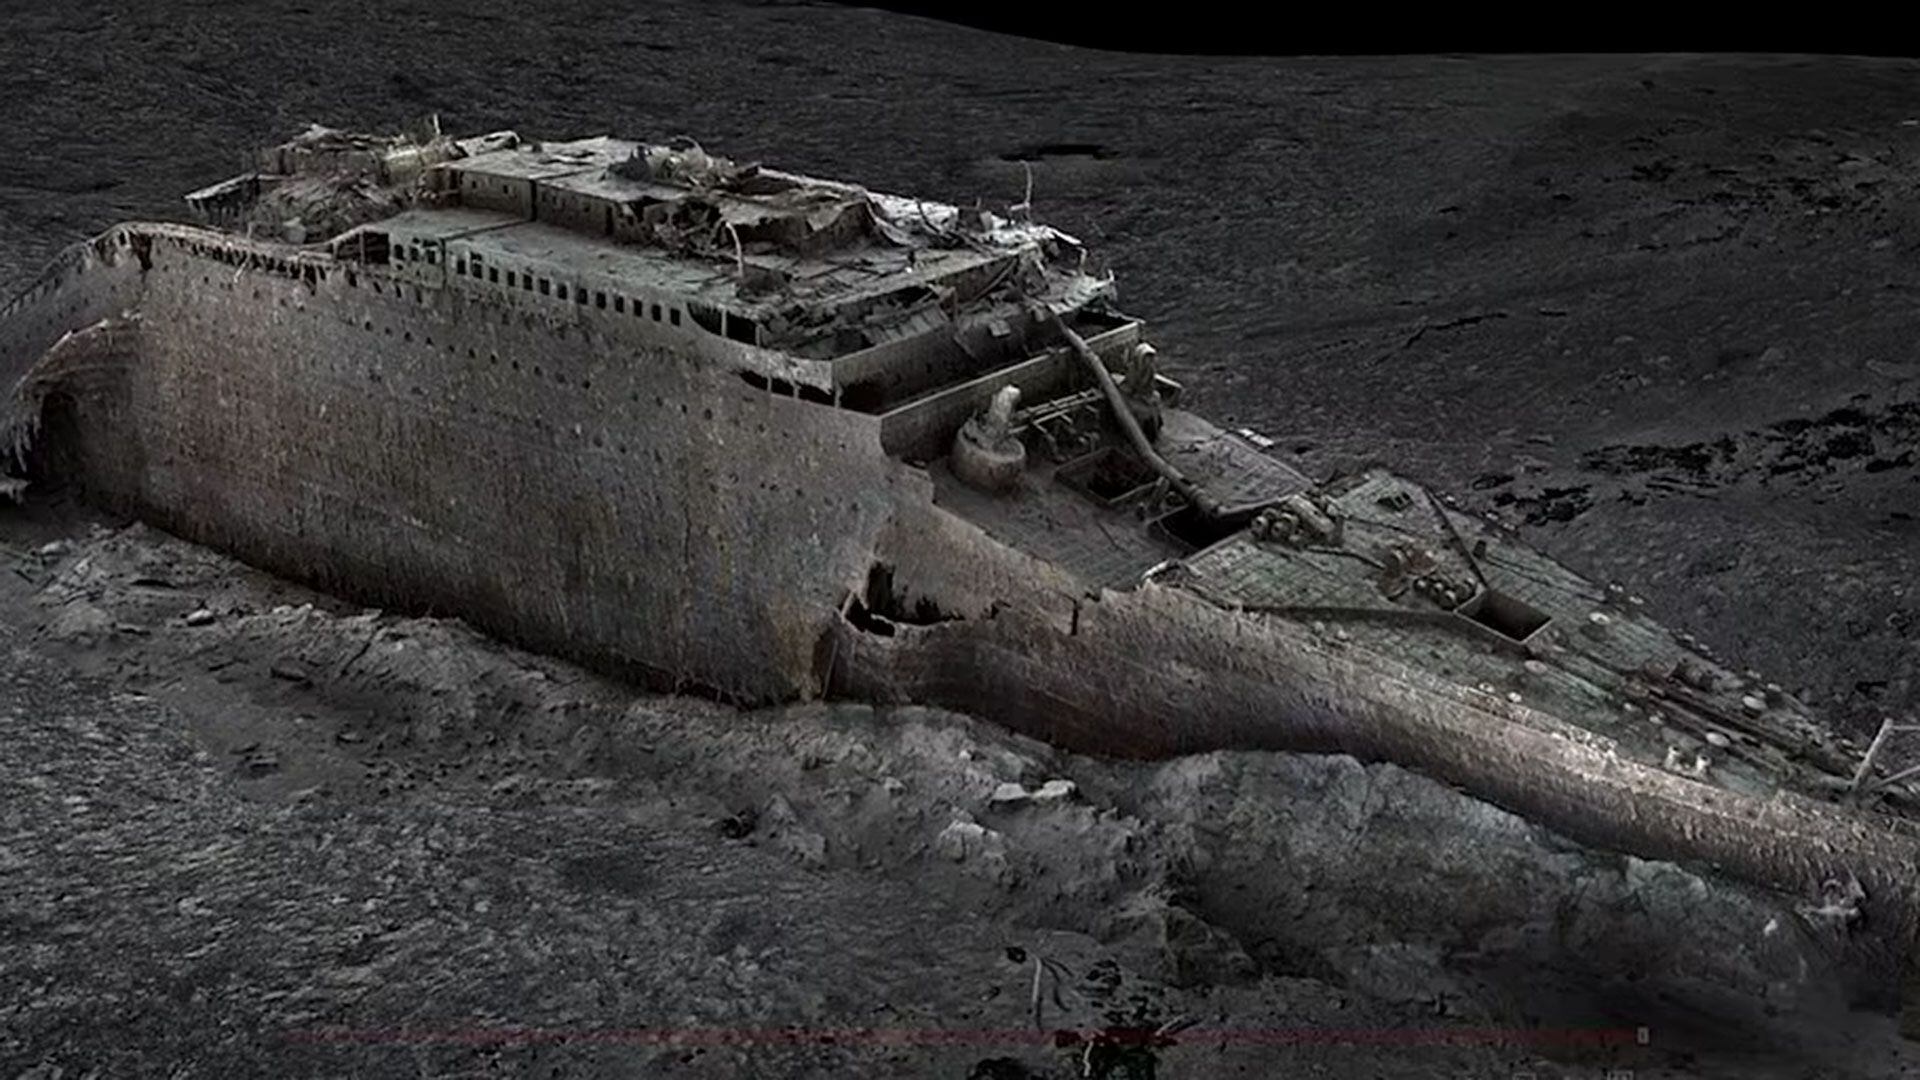 Imágenes tomada del escaneo digital difundido por Atlantic/Magellan, se observa la proa del Titanic, en el Océano Atlántico. (Atlantic/Magellan vía AP)